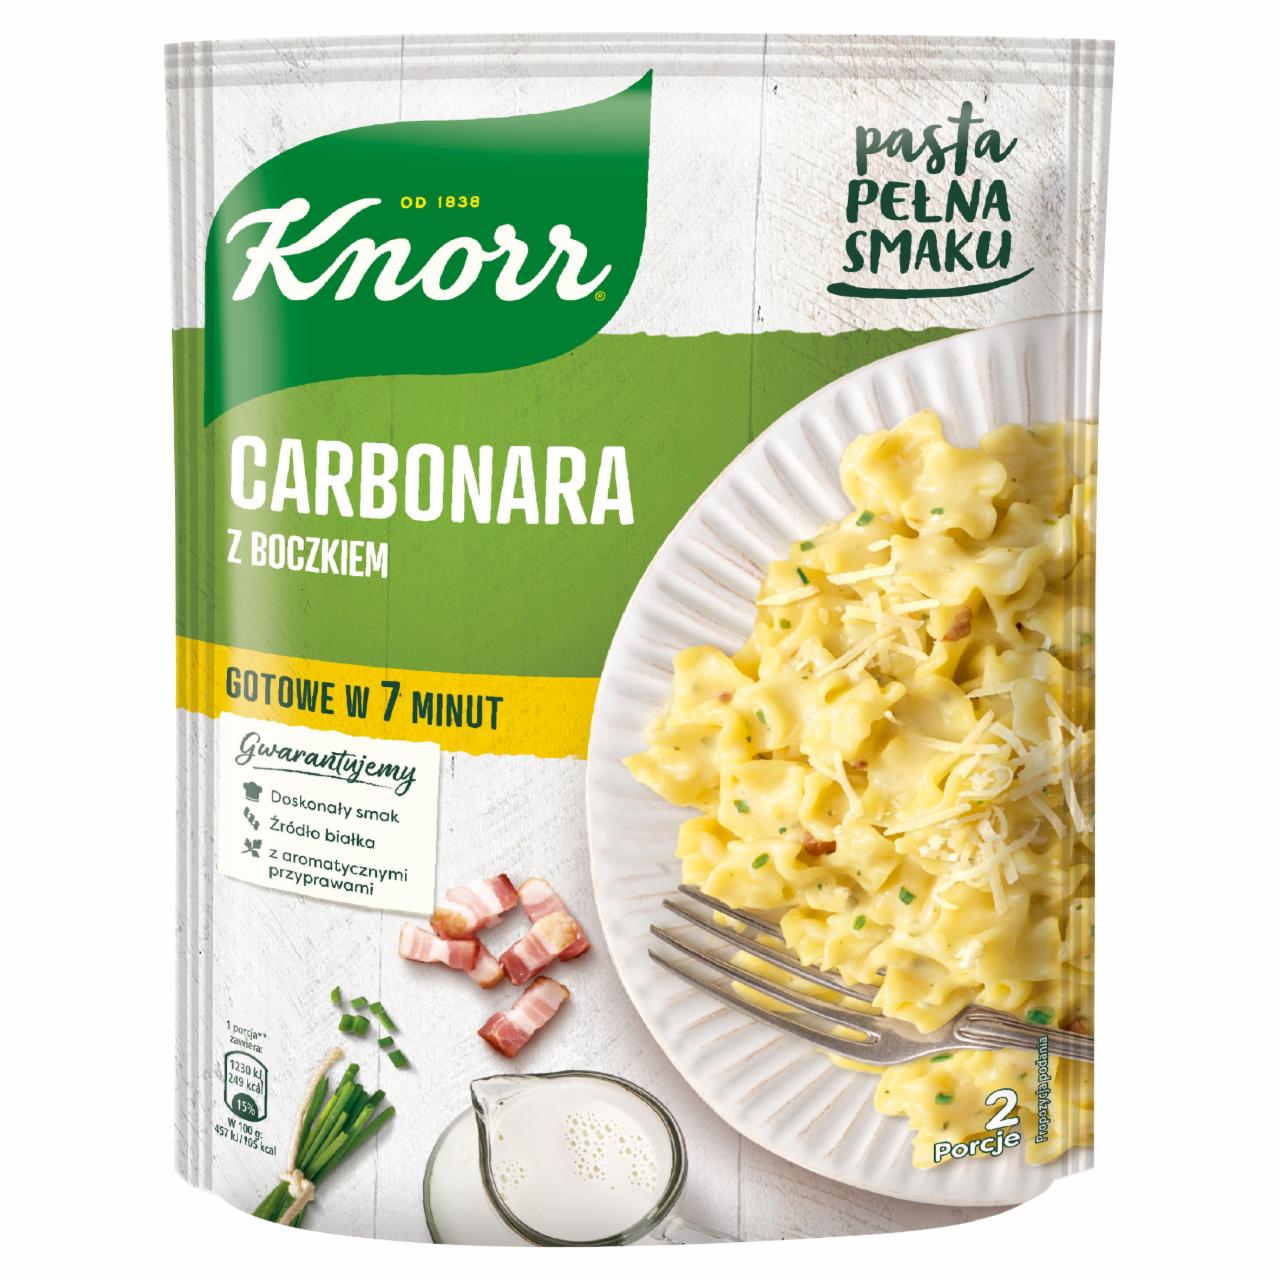 Zdjęcia - Knorr Carbonara z boczkiem 153 g